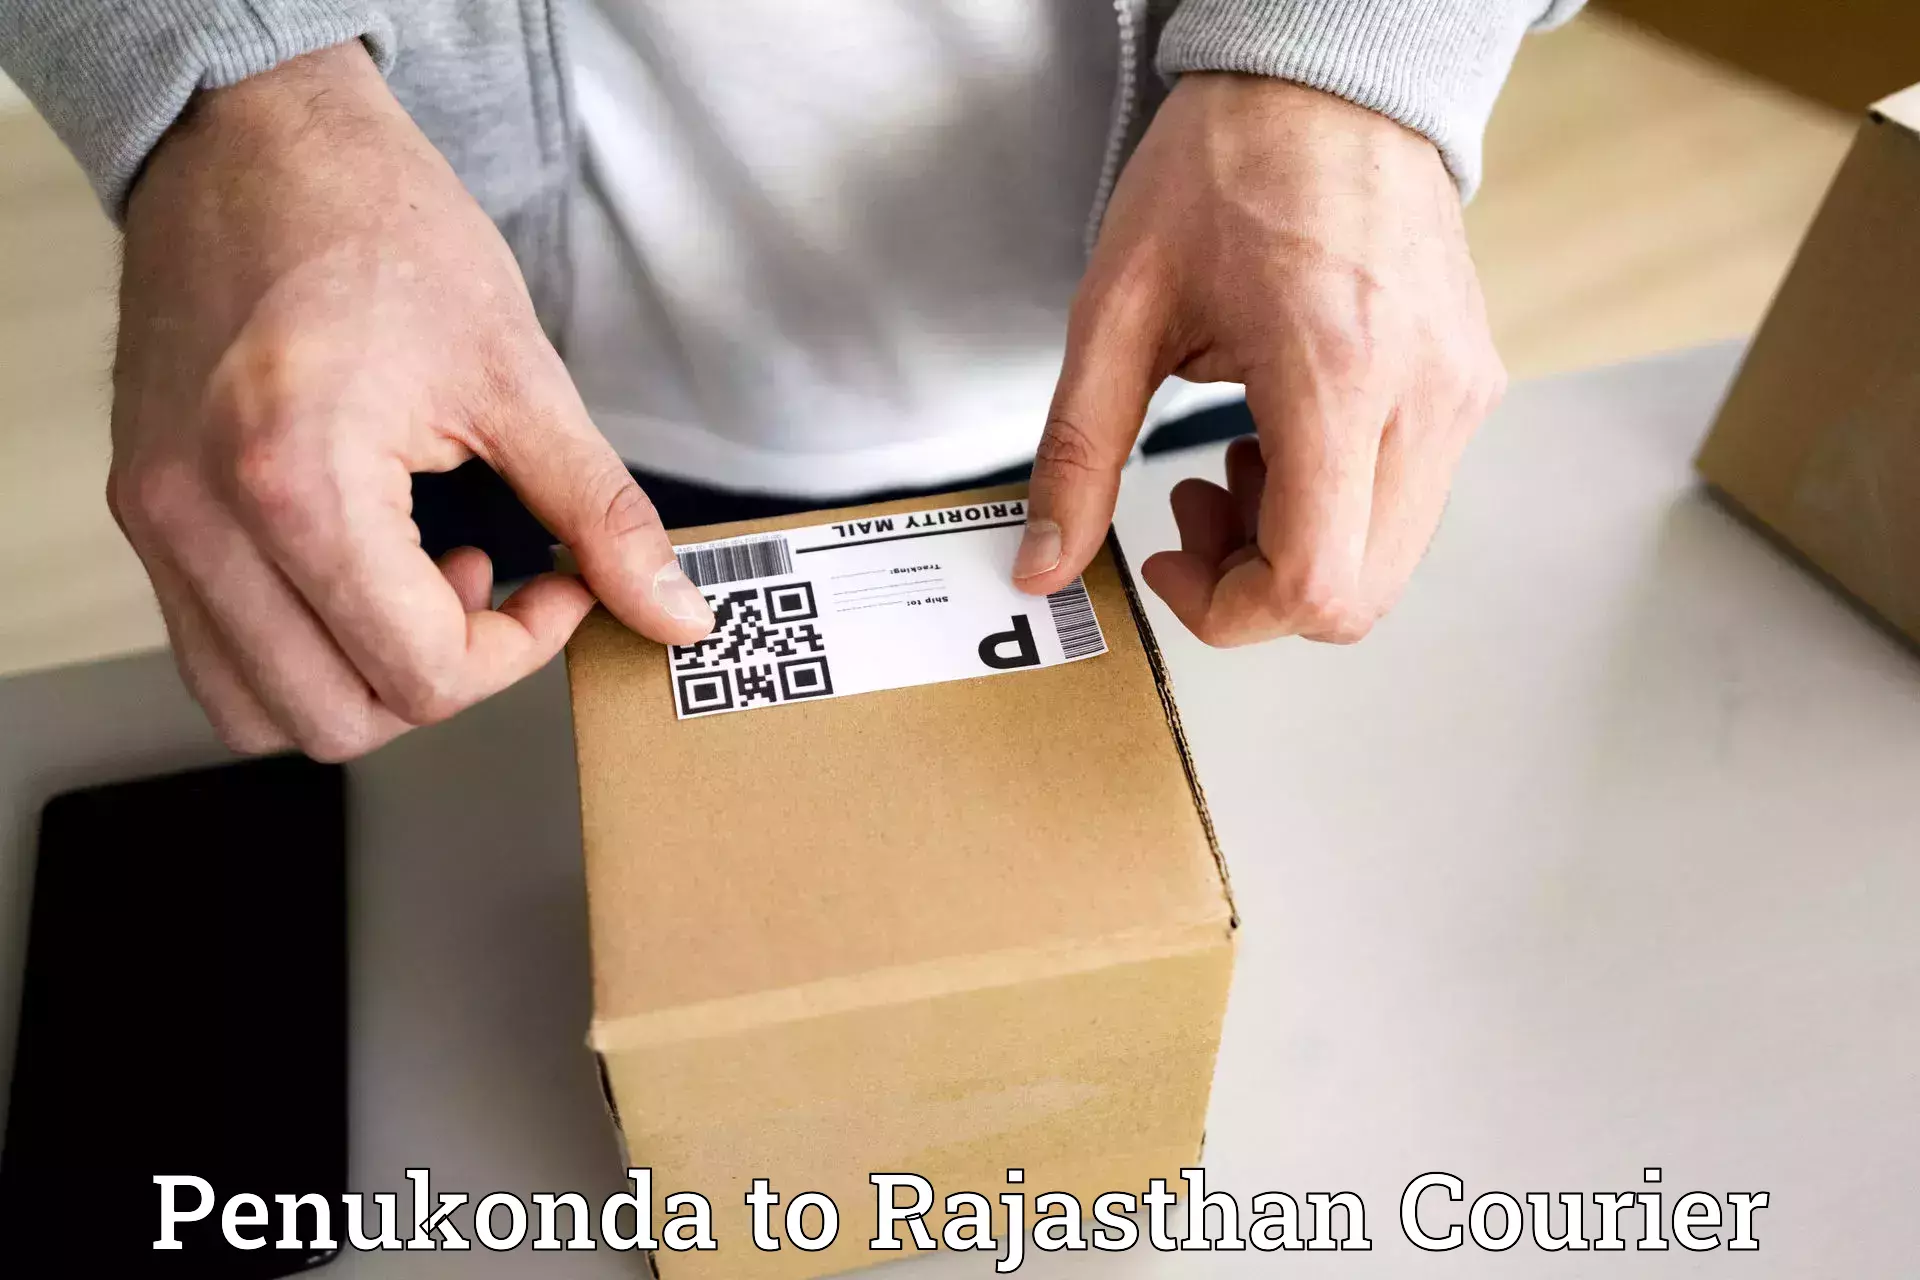 Shipping and handling Penukonda to Rajasthan